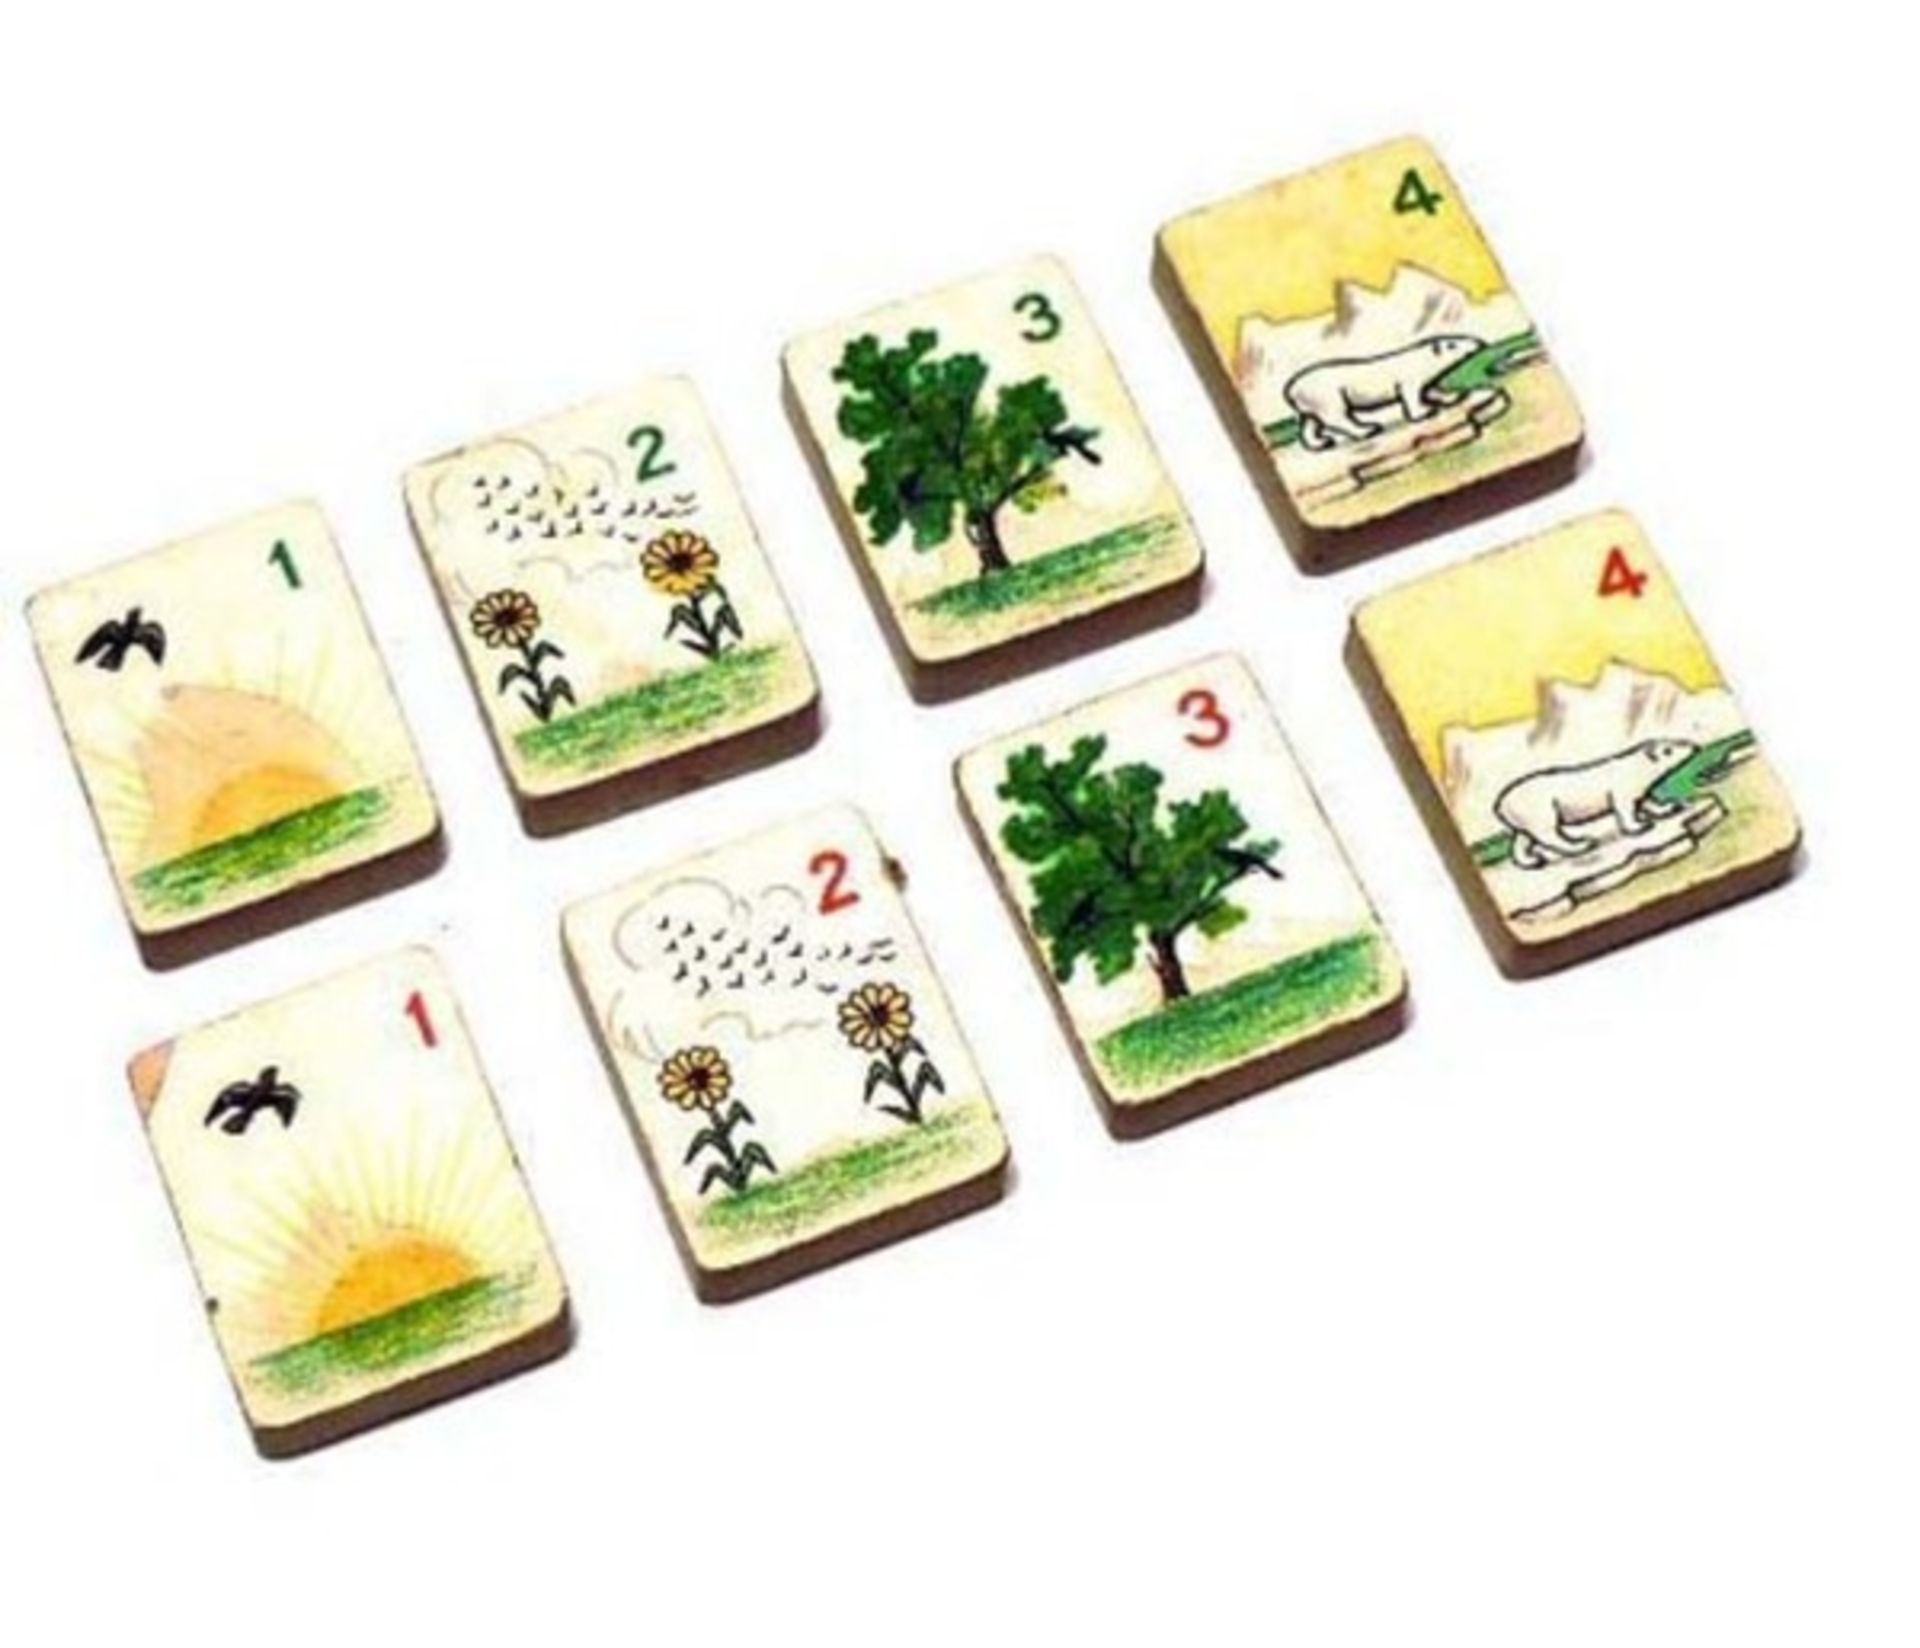 (Mahjong) Mahjong Europees, De Sala Spelen met het Rode zegel, ca. 1930 - Bild 16 aus 16